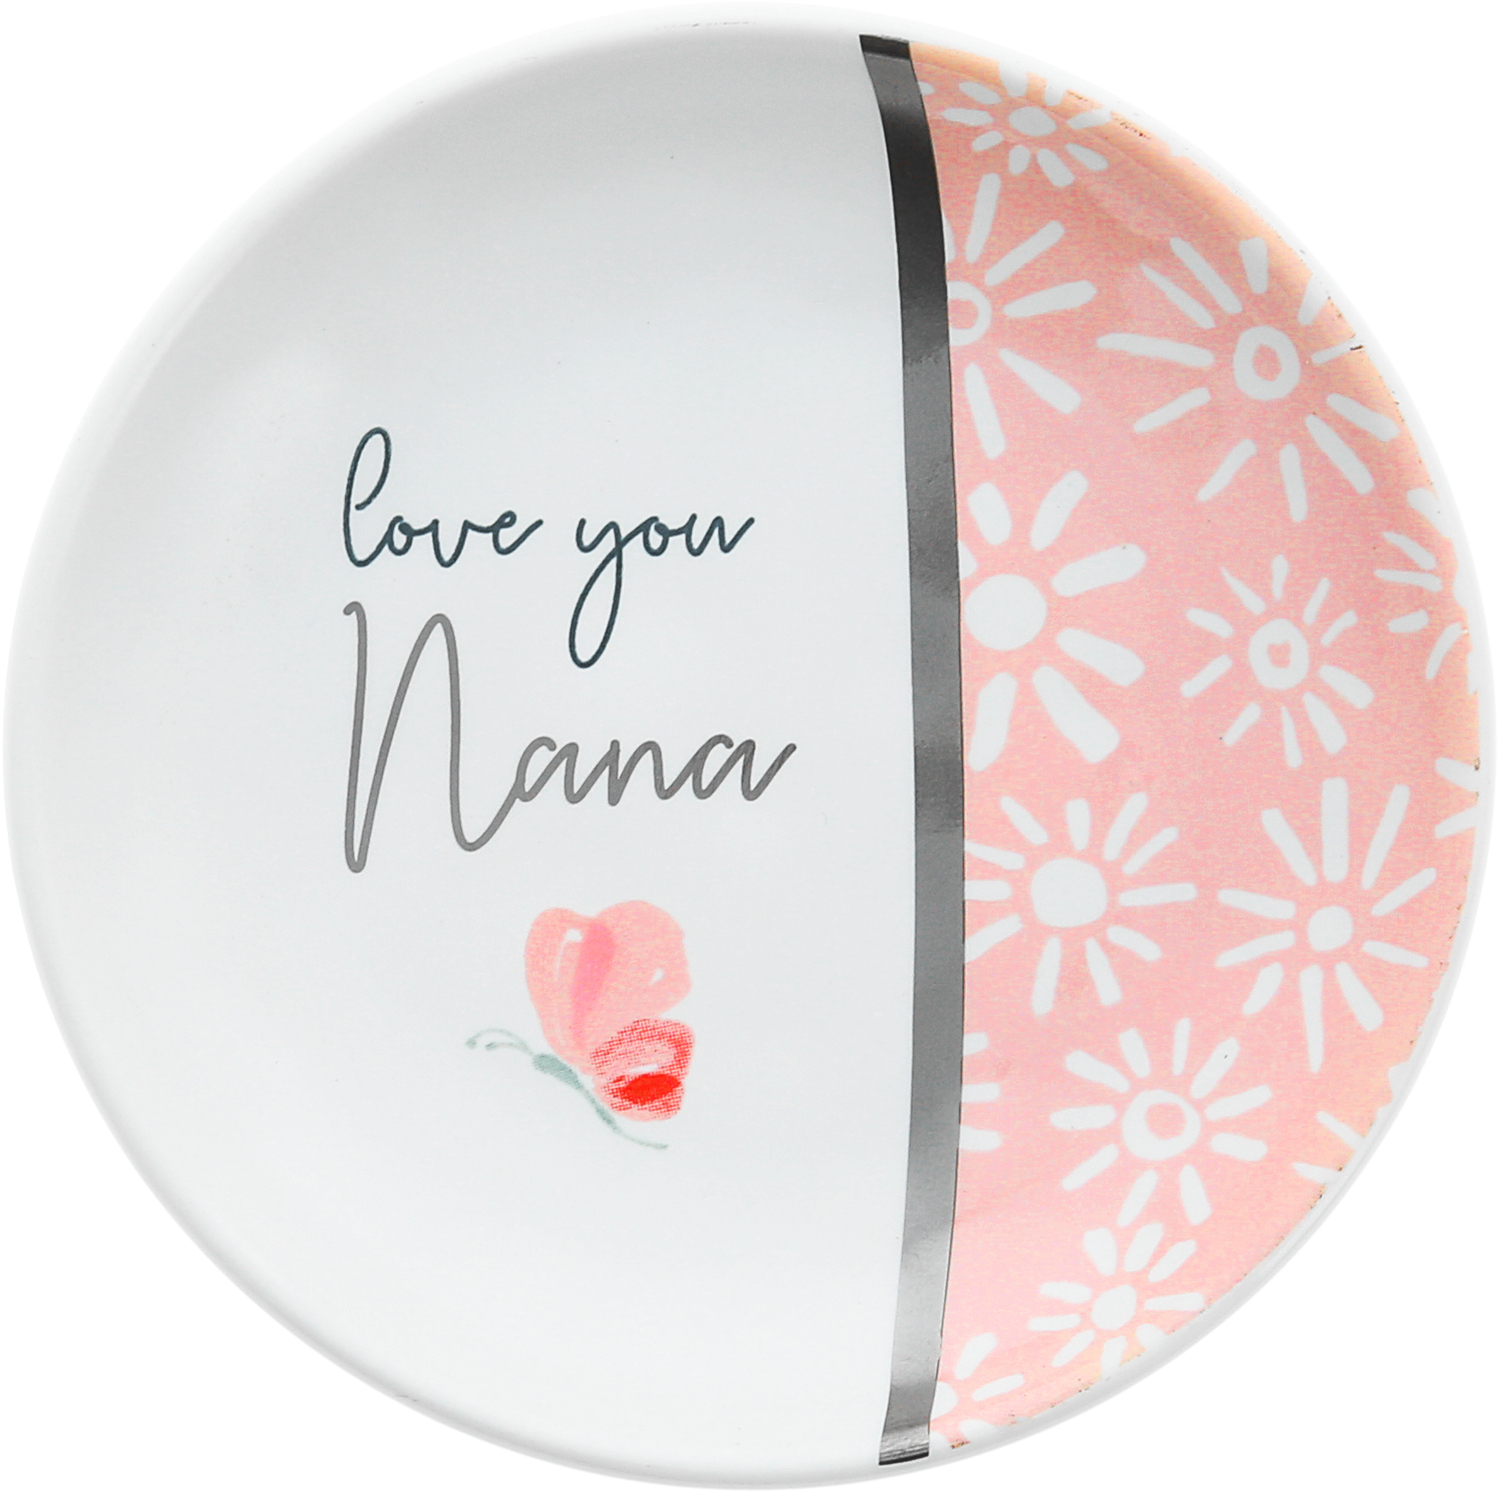 Nana by Rosy Heart - Nana - 4" Dish